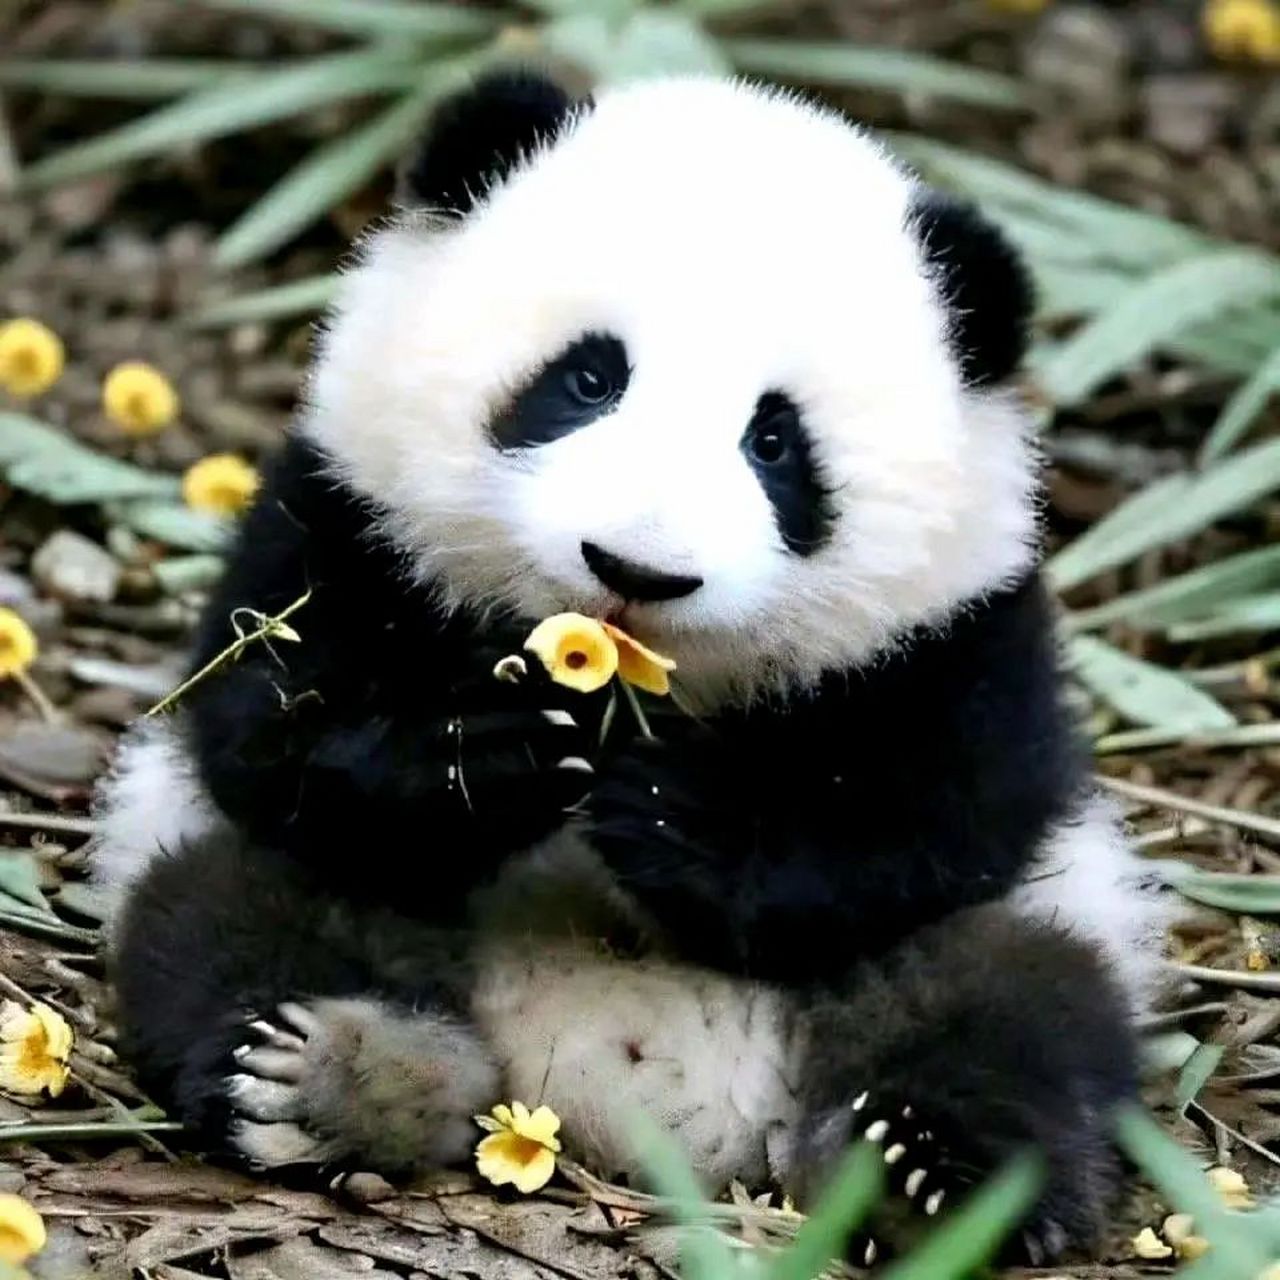 小熊猫照片 可爱呆萌图片